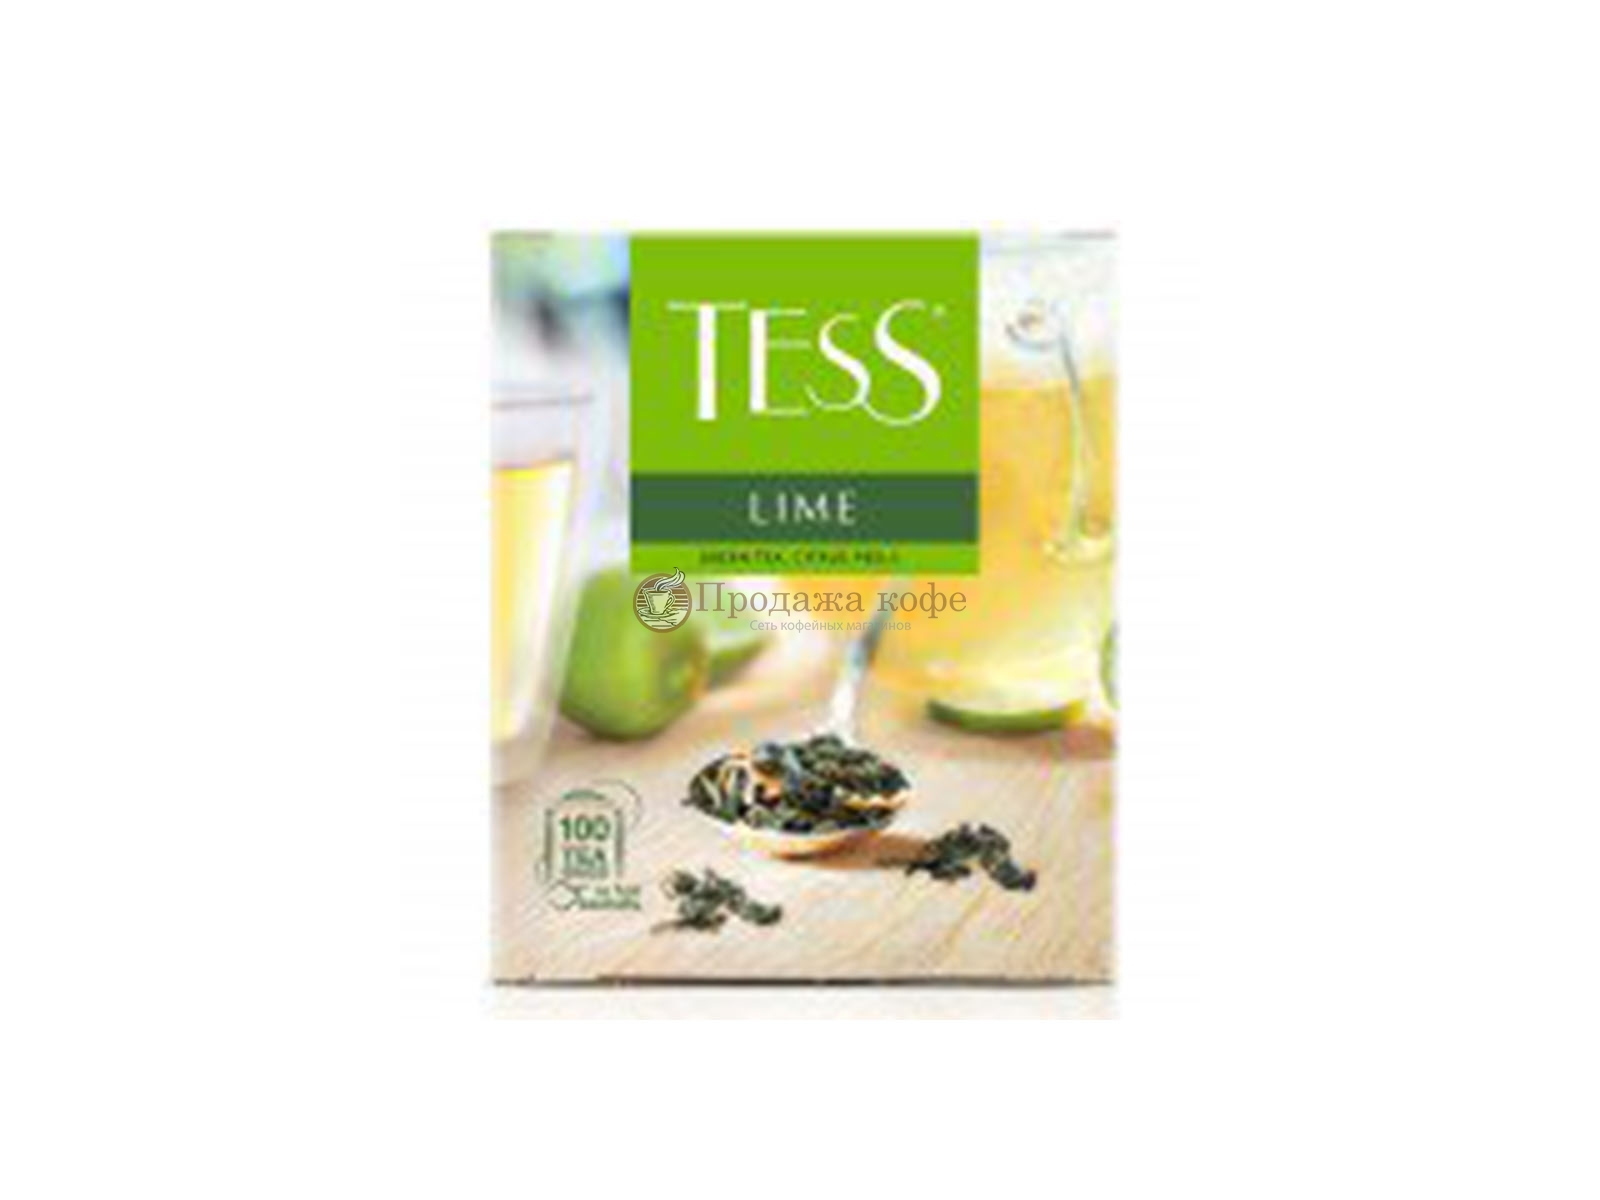 Чай TESS (Тесс) Lime зеленый пакетированный, 100 шт/уп